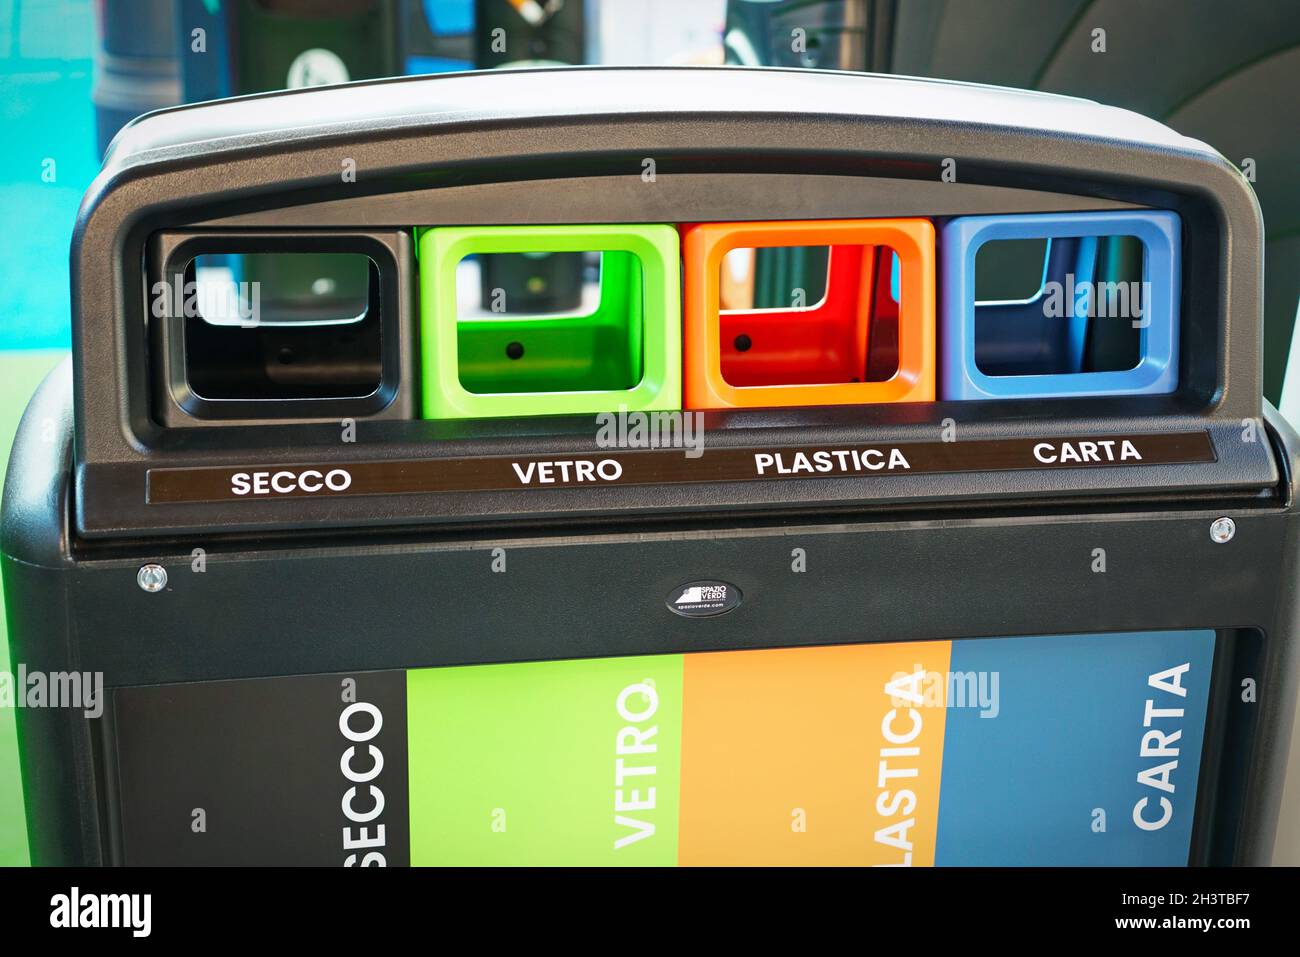 Fila di contenitori per la raccolta differenziata dei rifiuti. Milano, Italia - Ottobre 2021 Foto Stock